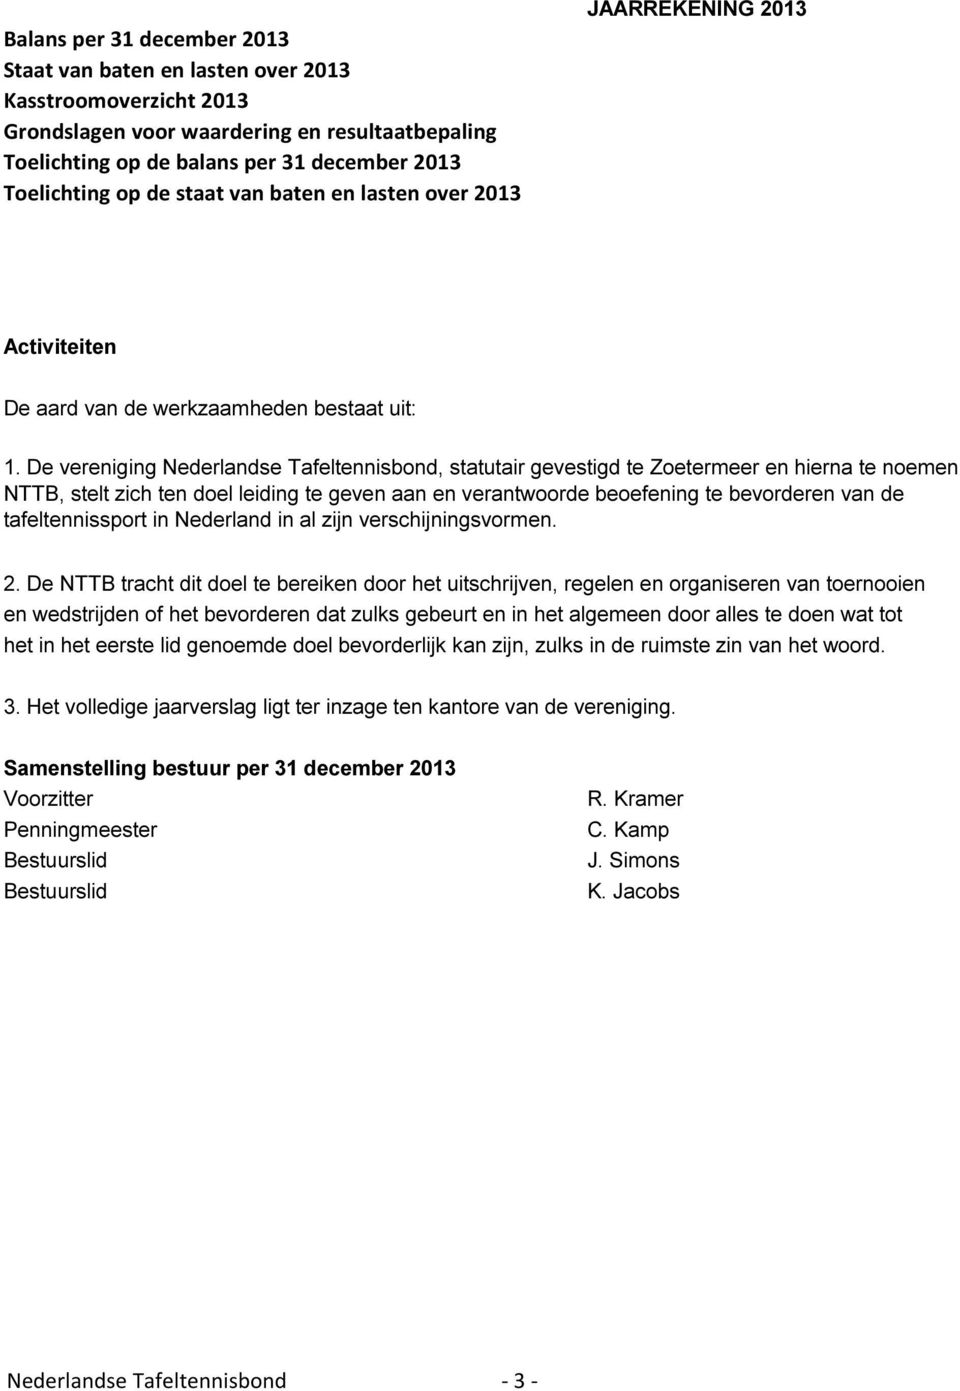 De vereniging Nederlandse Tafeltennisbond, statutair gevestigd te Zoetermeer en hierna te noemen NTTB, stelt zich ten doel leiding te geven aan en verantwoorde beoefening te bevorderen van de